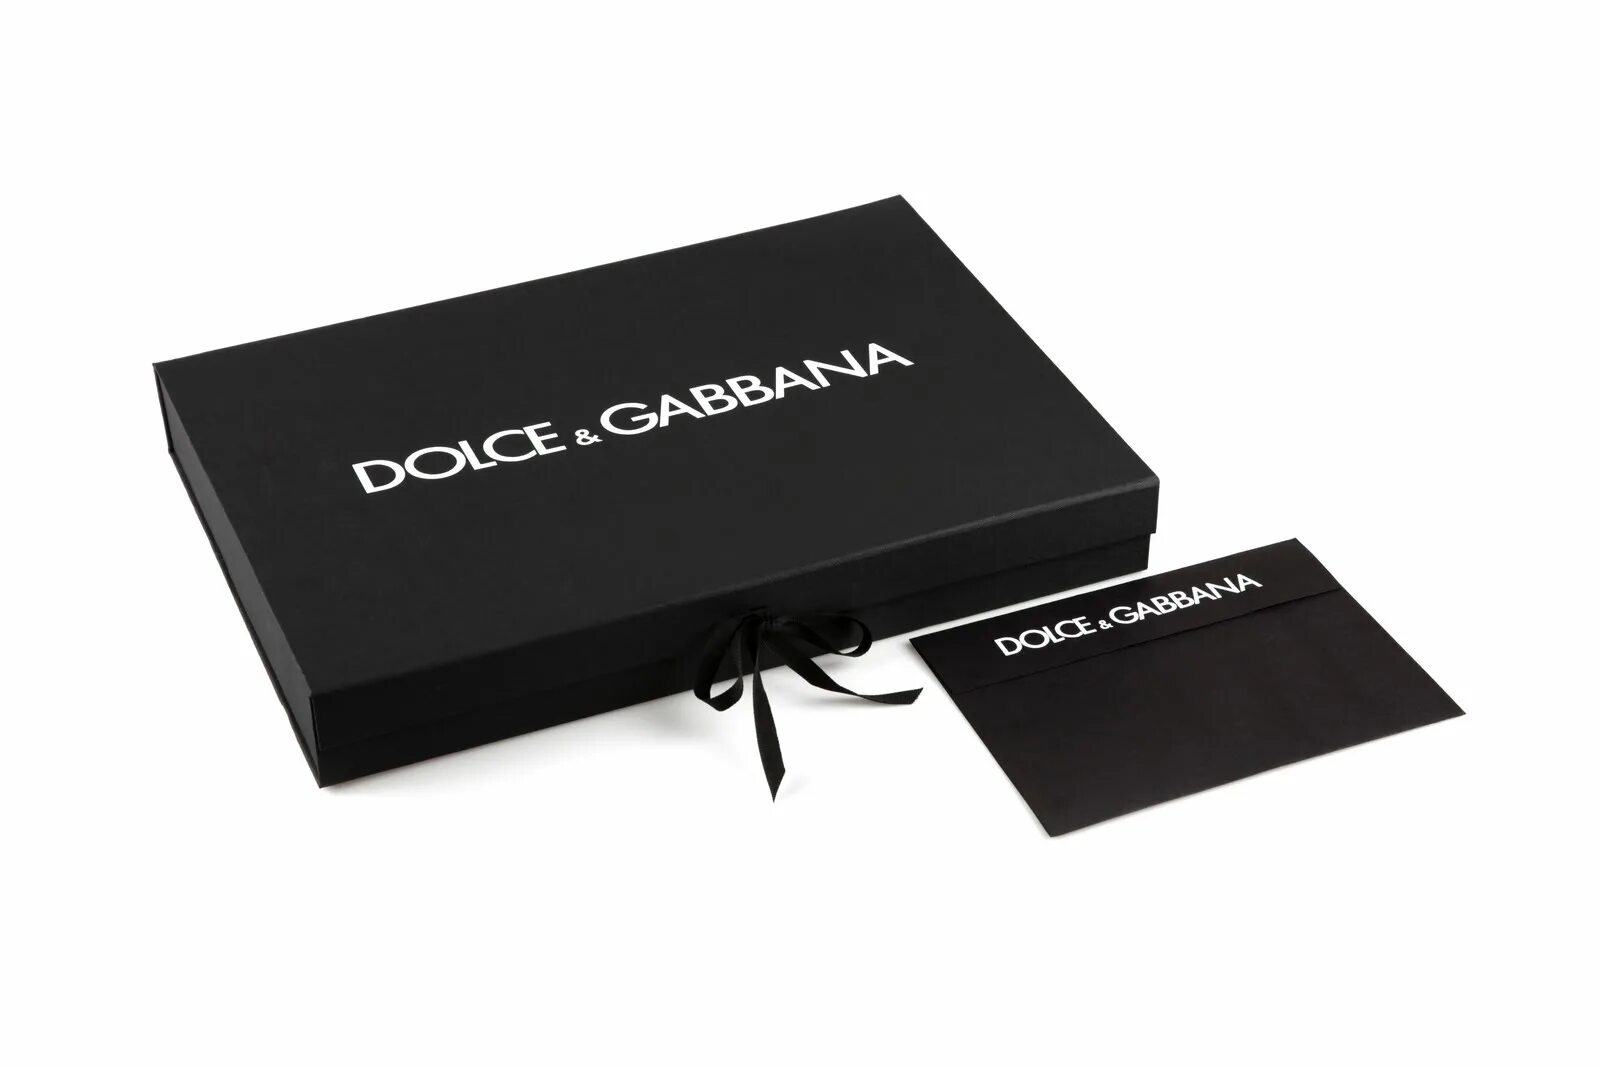 Дольче Габбана Дольче упаковка. Подарочный пакет Дольче Габбана. Пакет Dolce Gabbana оригинал. Дипломат Дольче Габбана. Упаковка дольче габбана